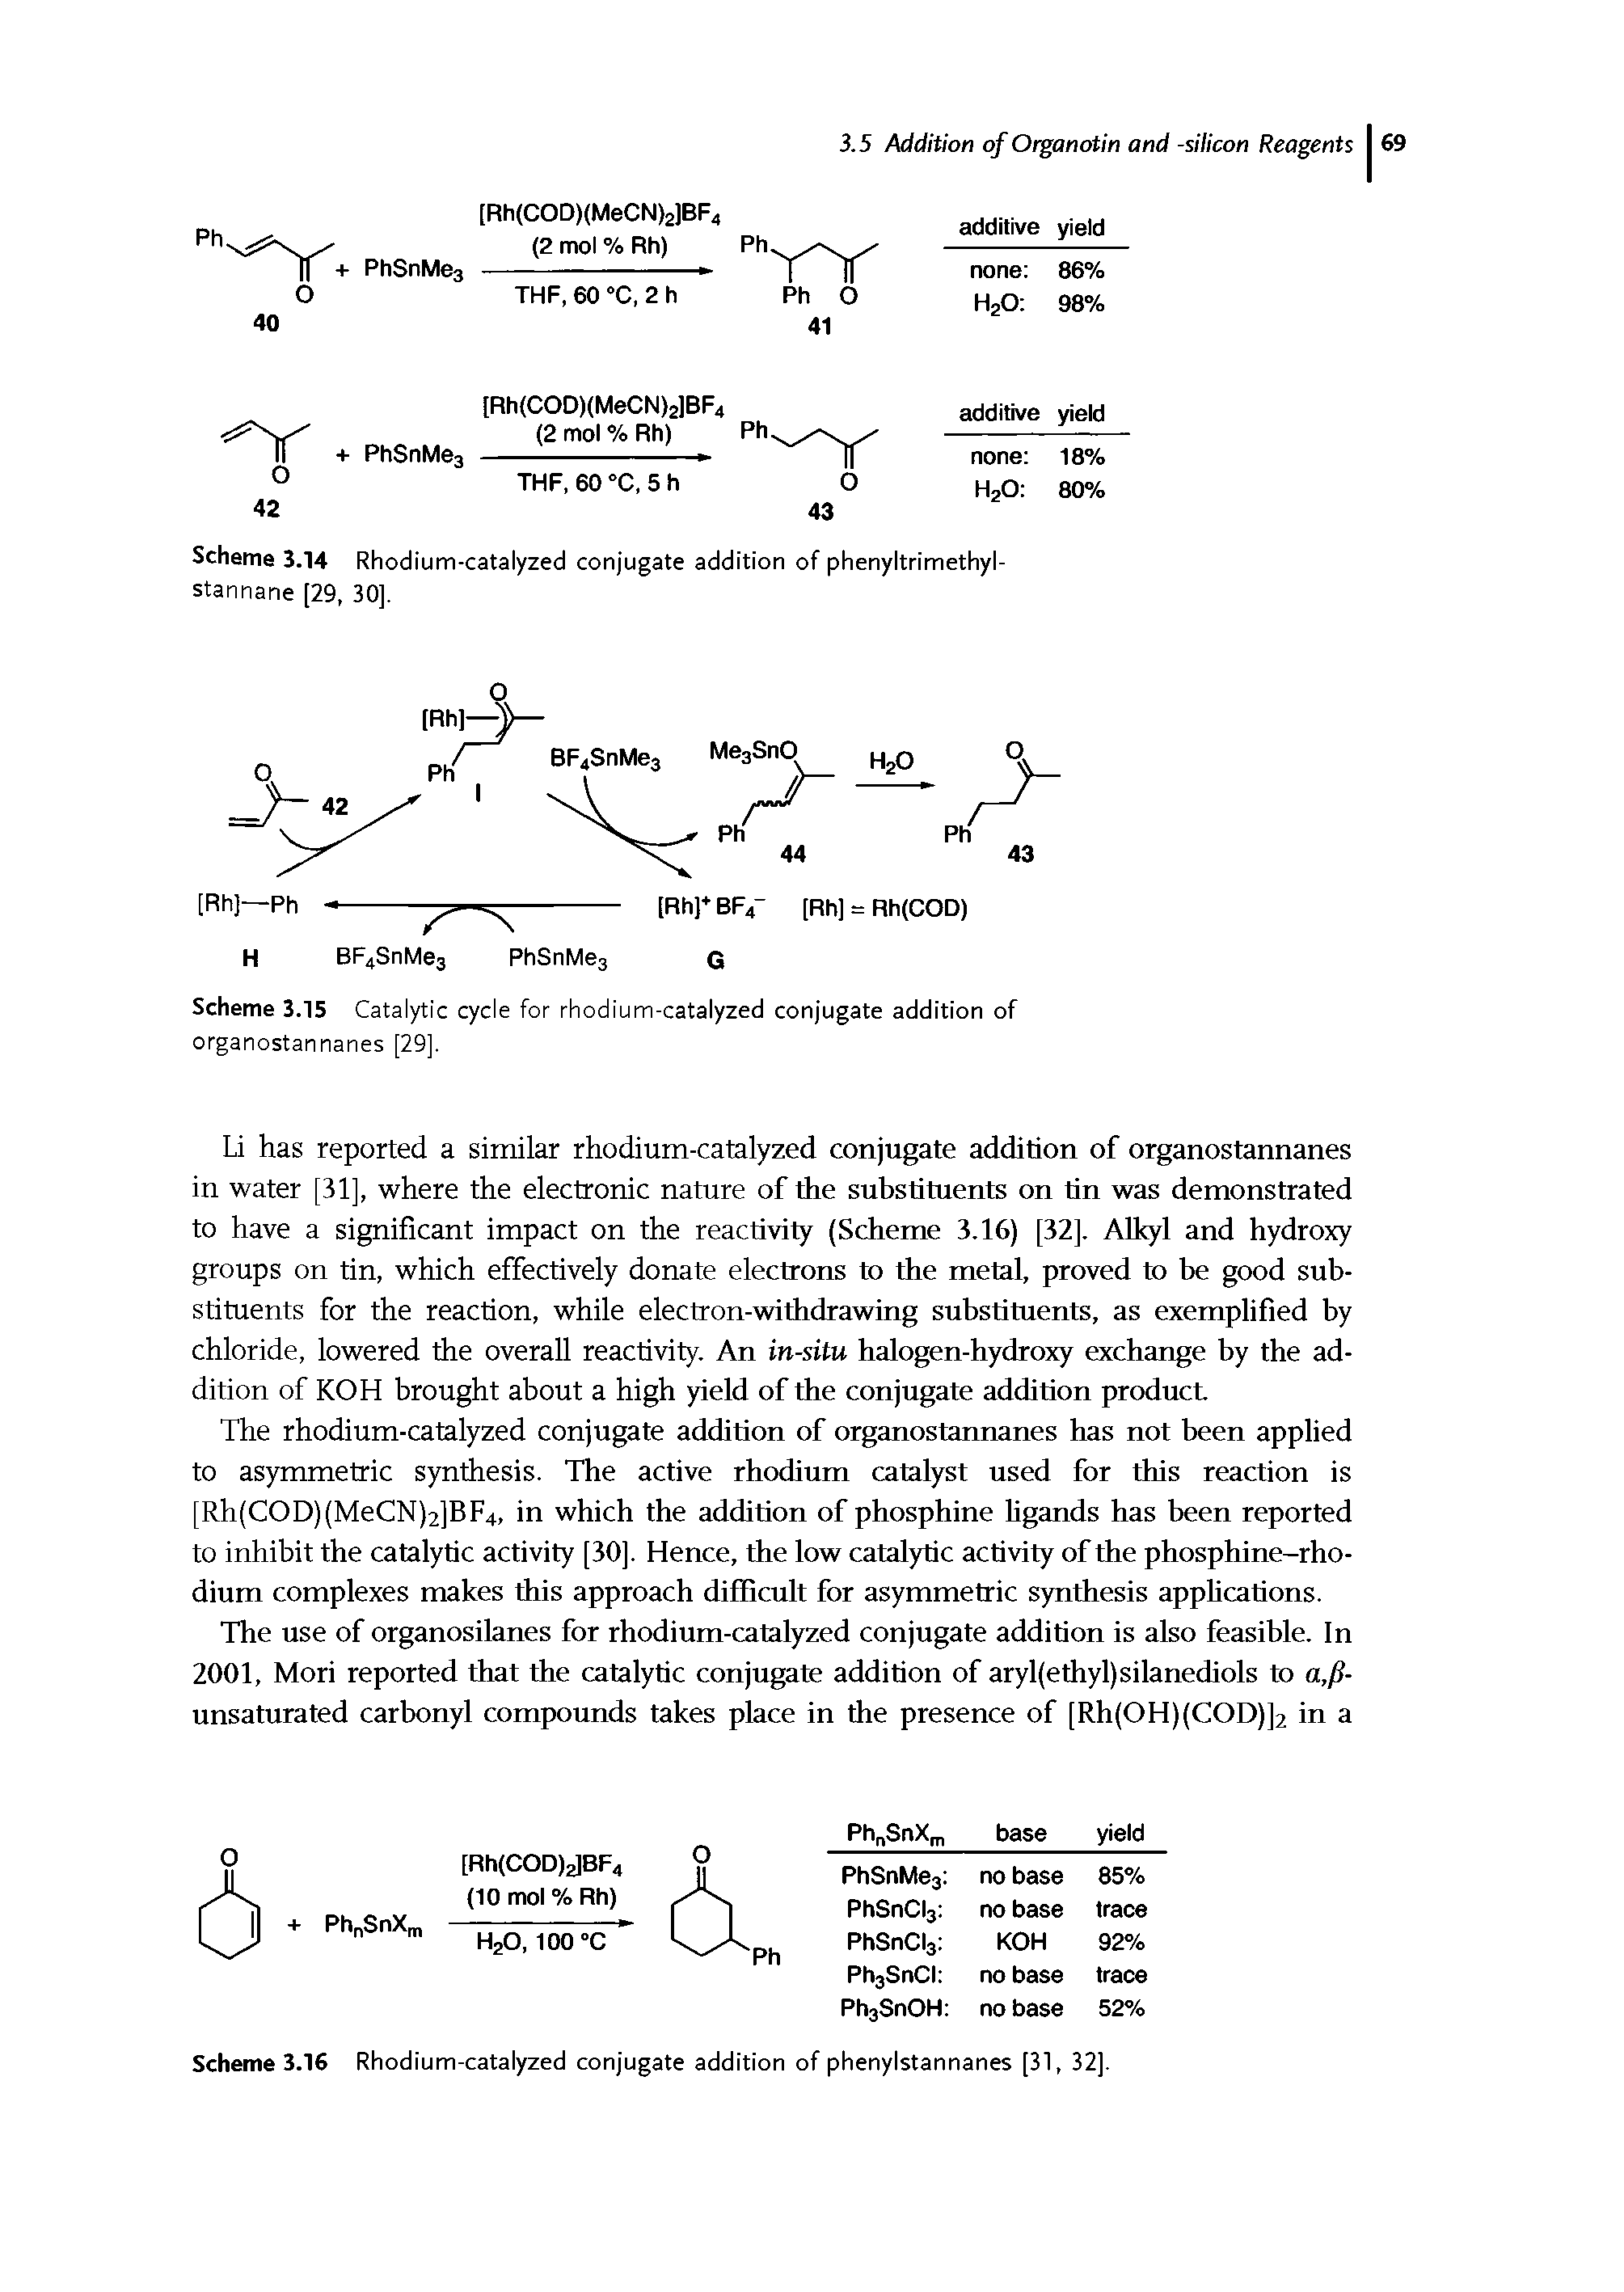 Scheme 3.16 Rhodium-catalyzed conjugate addition of phenylstannanes [31, 32].